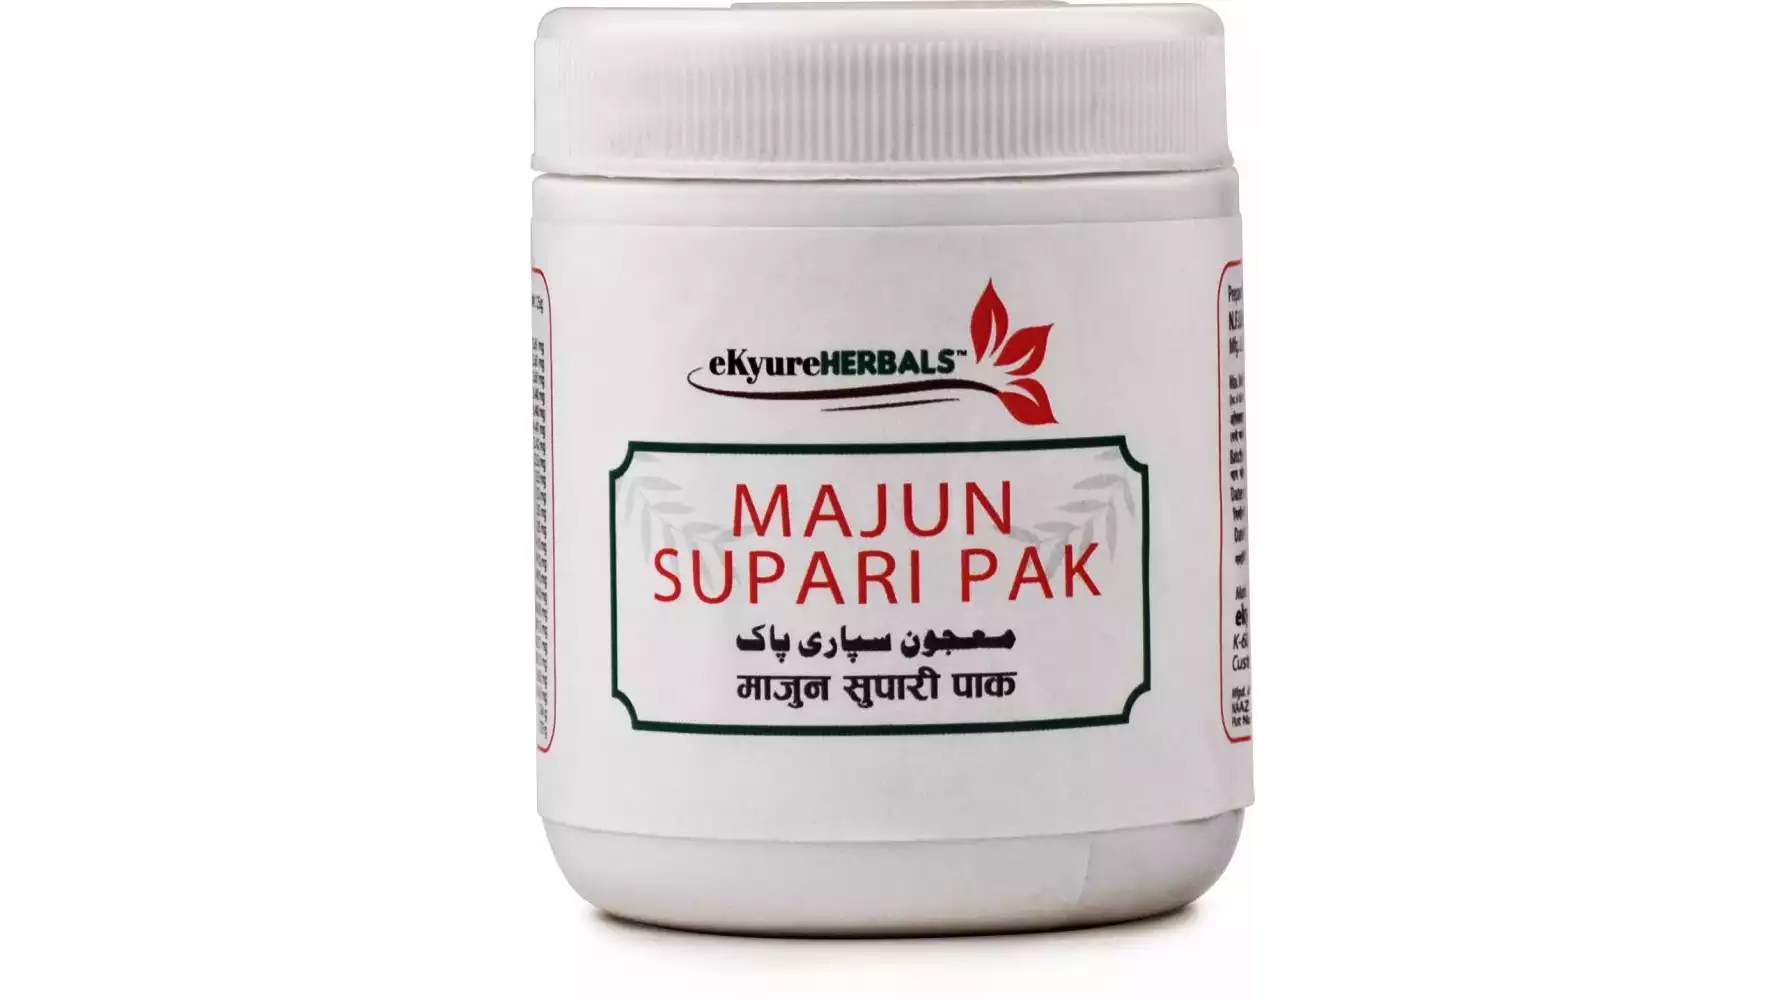 Ekyure Herbals Majun Supari Pak (125g)